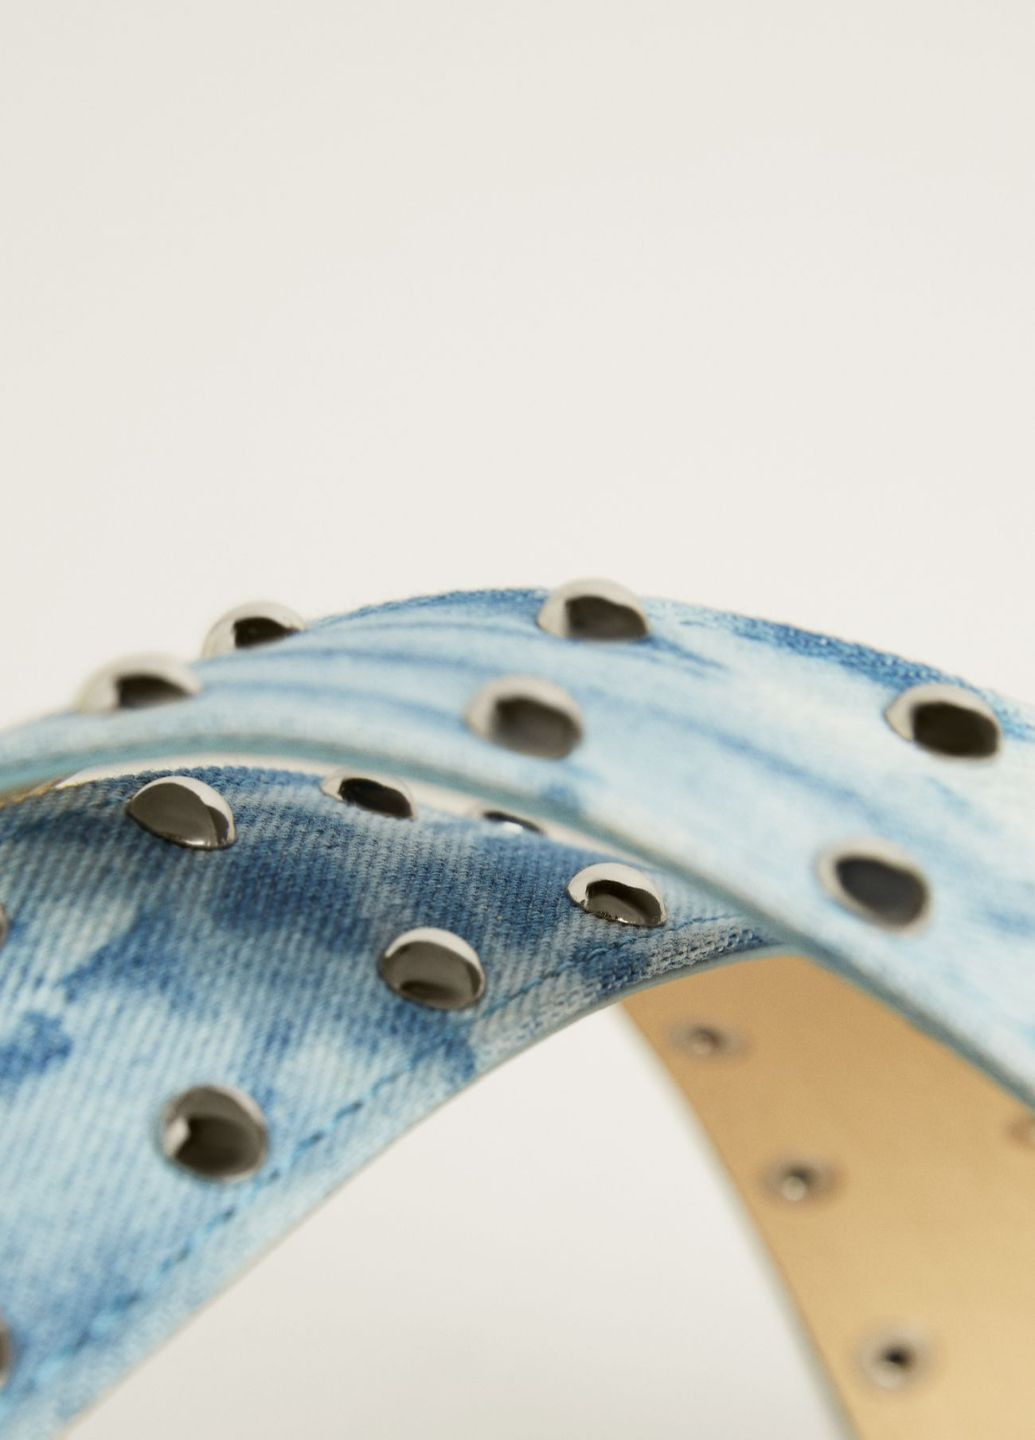 Ремень Bershka джинсовый однотонный голубой текстиль